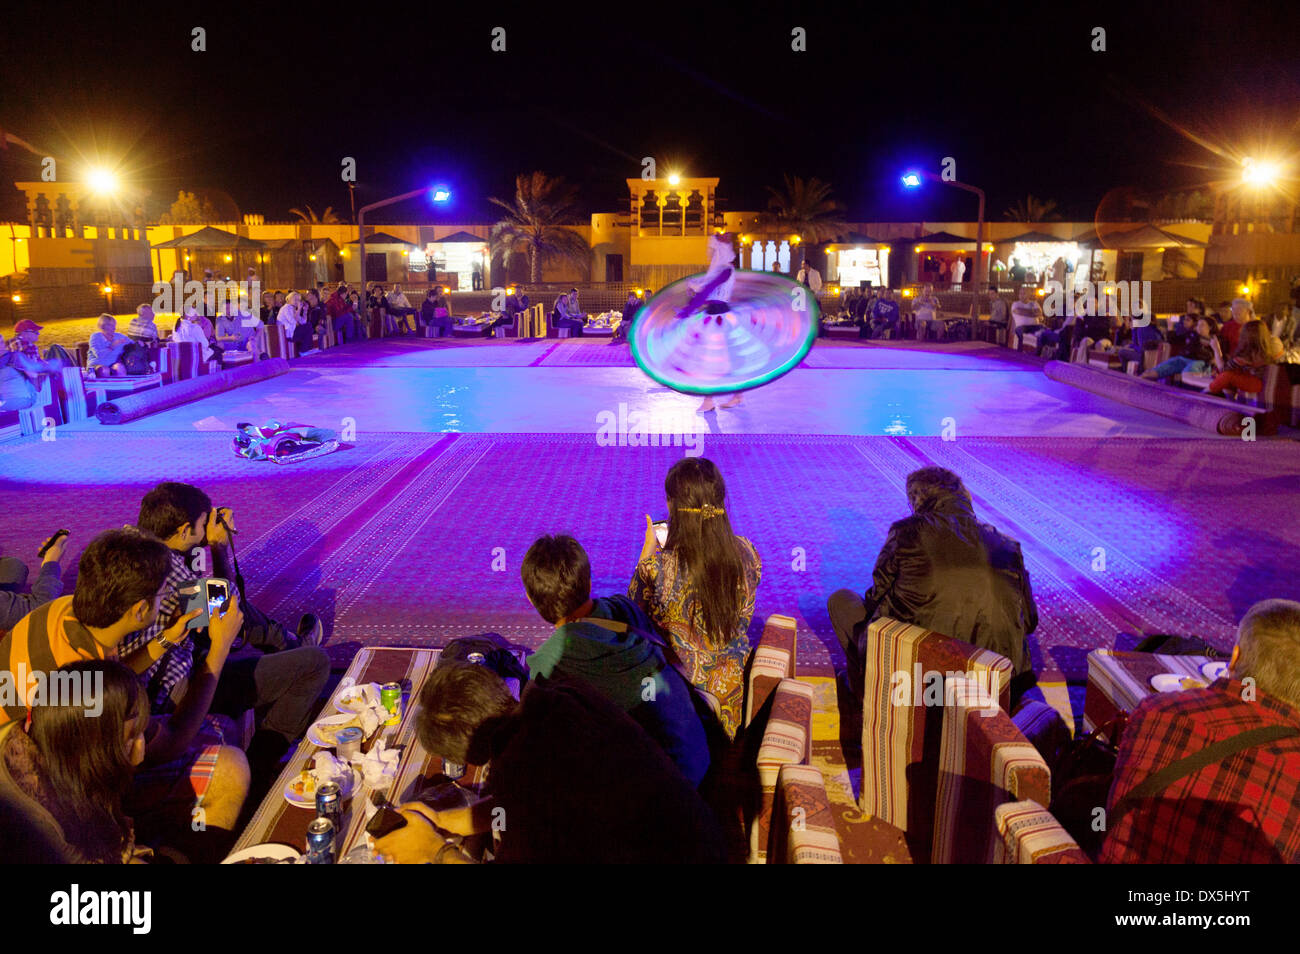 Les touristes à regarder un spectacle de danse Tanoura traditionnels dans le cadre d'un voyage safari dans le désert, DUBAÏ, ÉMIRATS ARABES UNIS, Émirats arabes unis Moyen-orient Banque D'Images